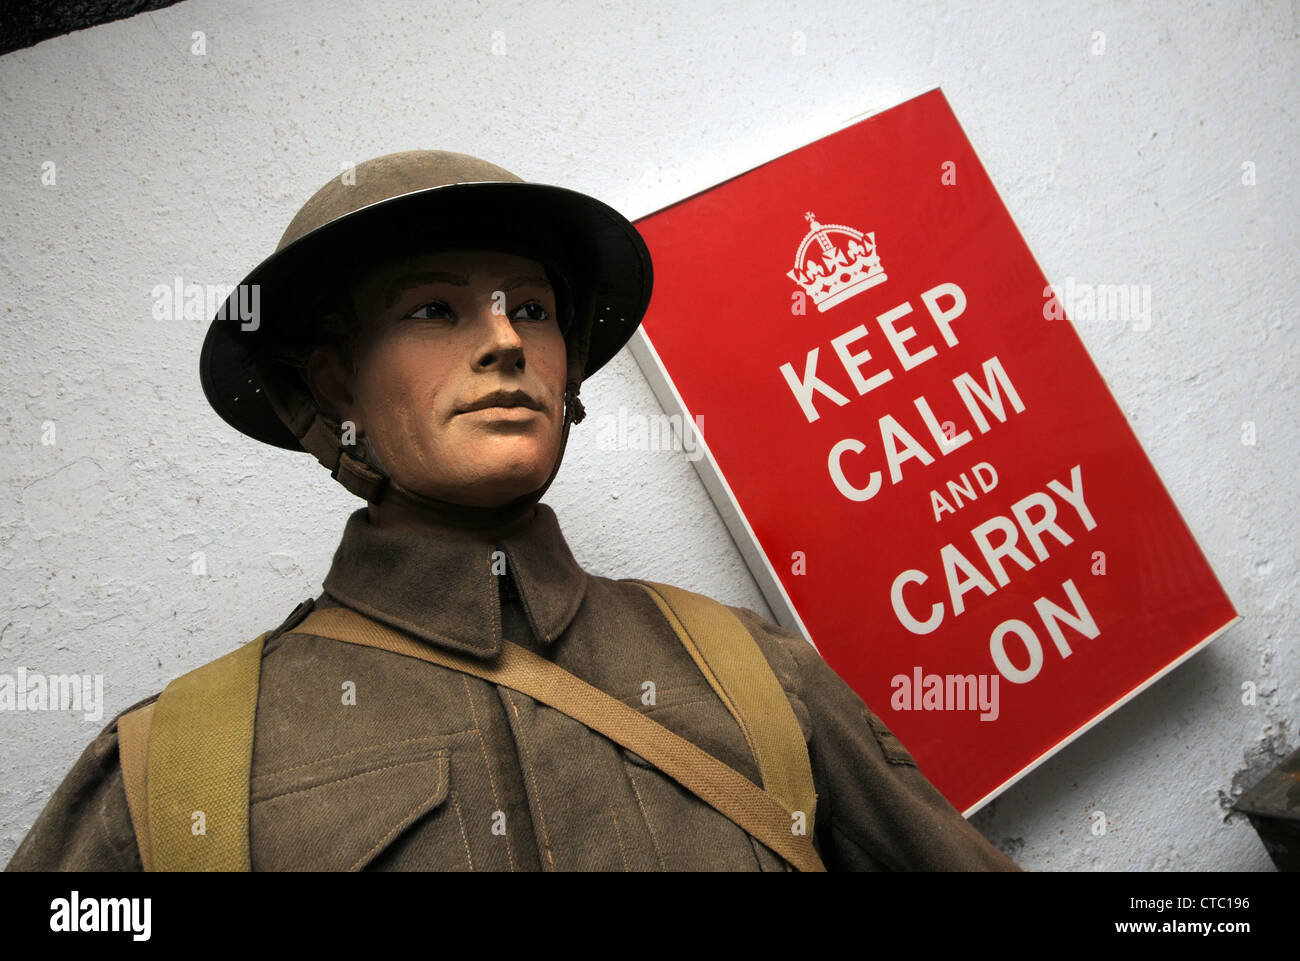 Bewahren Sie Ruhe und Carry On Plakat durch ein Modell eines britischen Soldaten Stockfoto